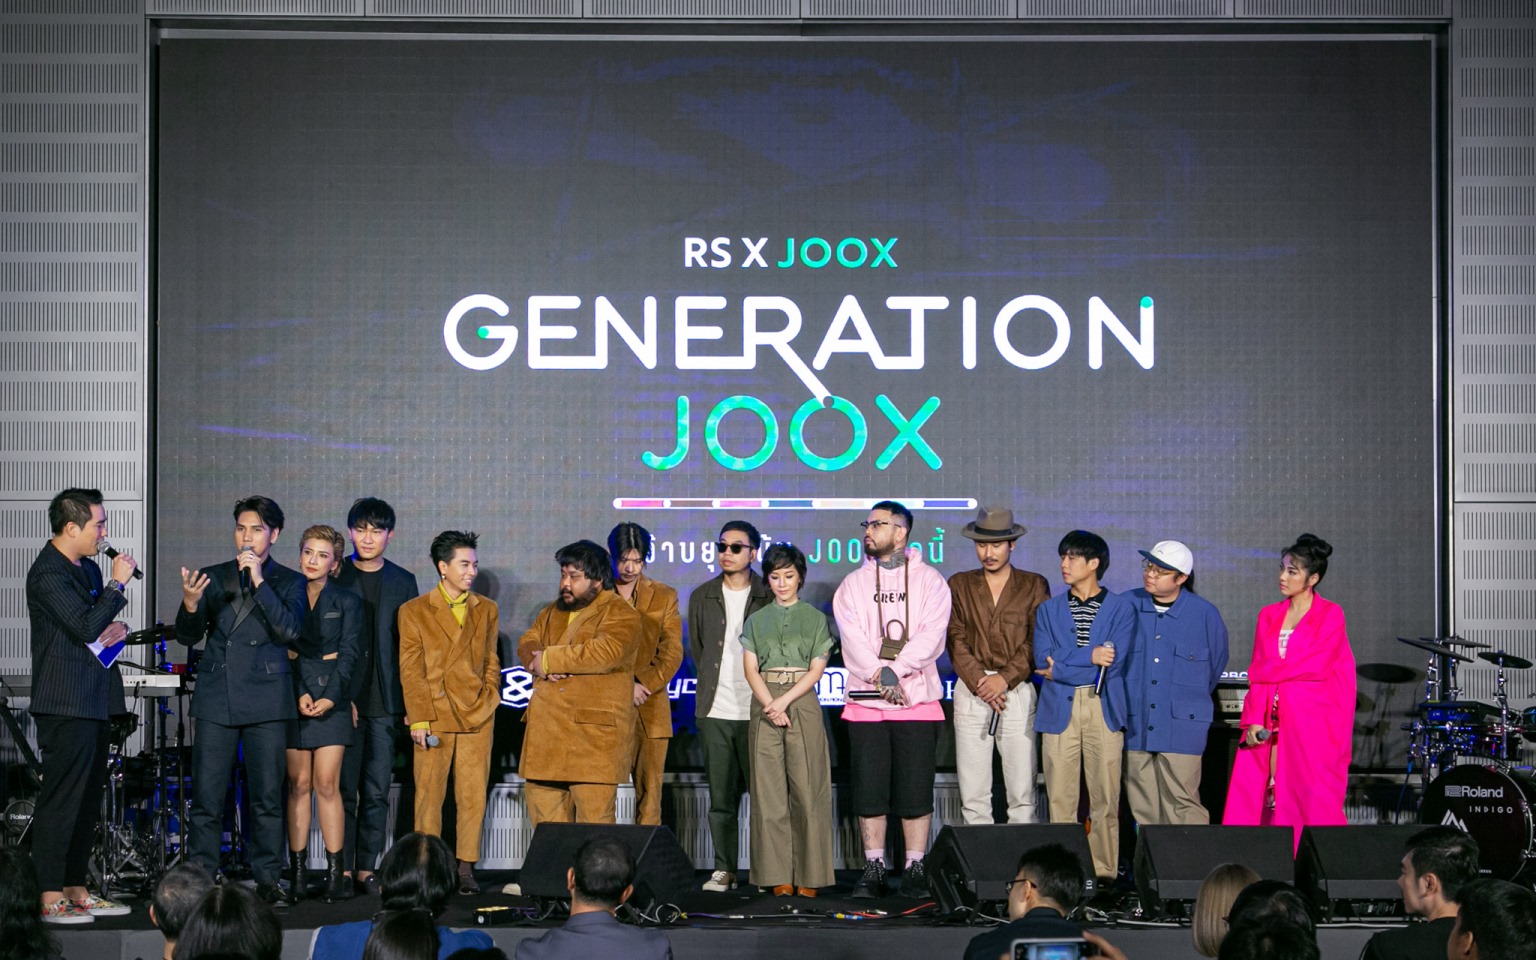 RS x JOOX GENERATION JOOX